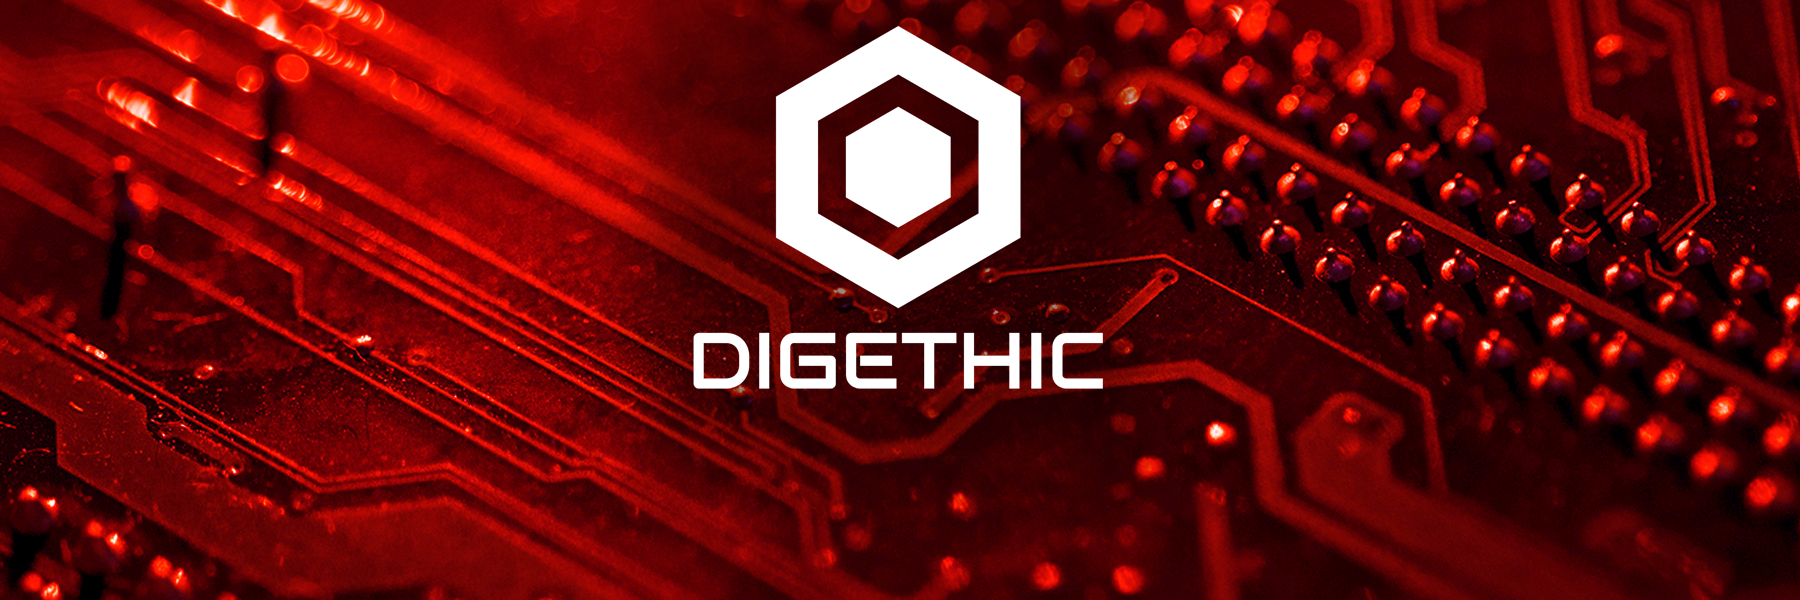 DIGETHIC Logo